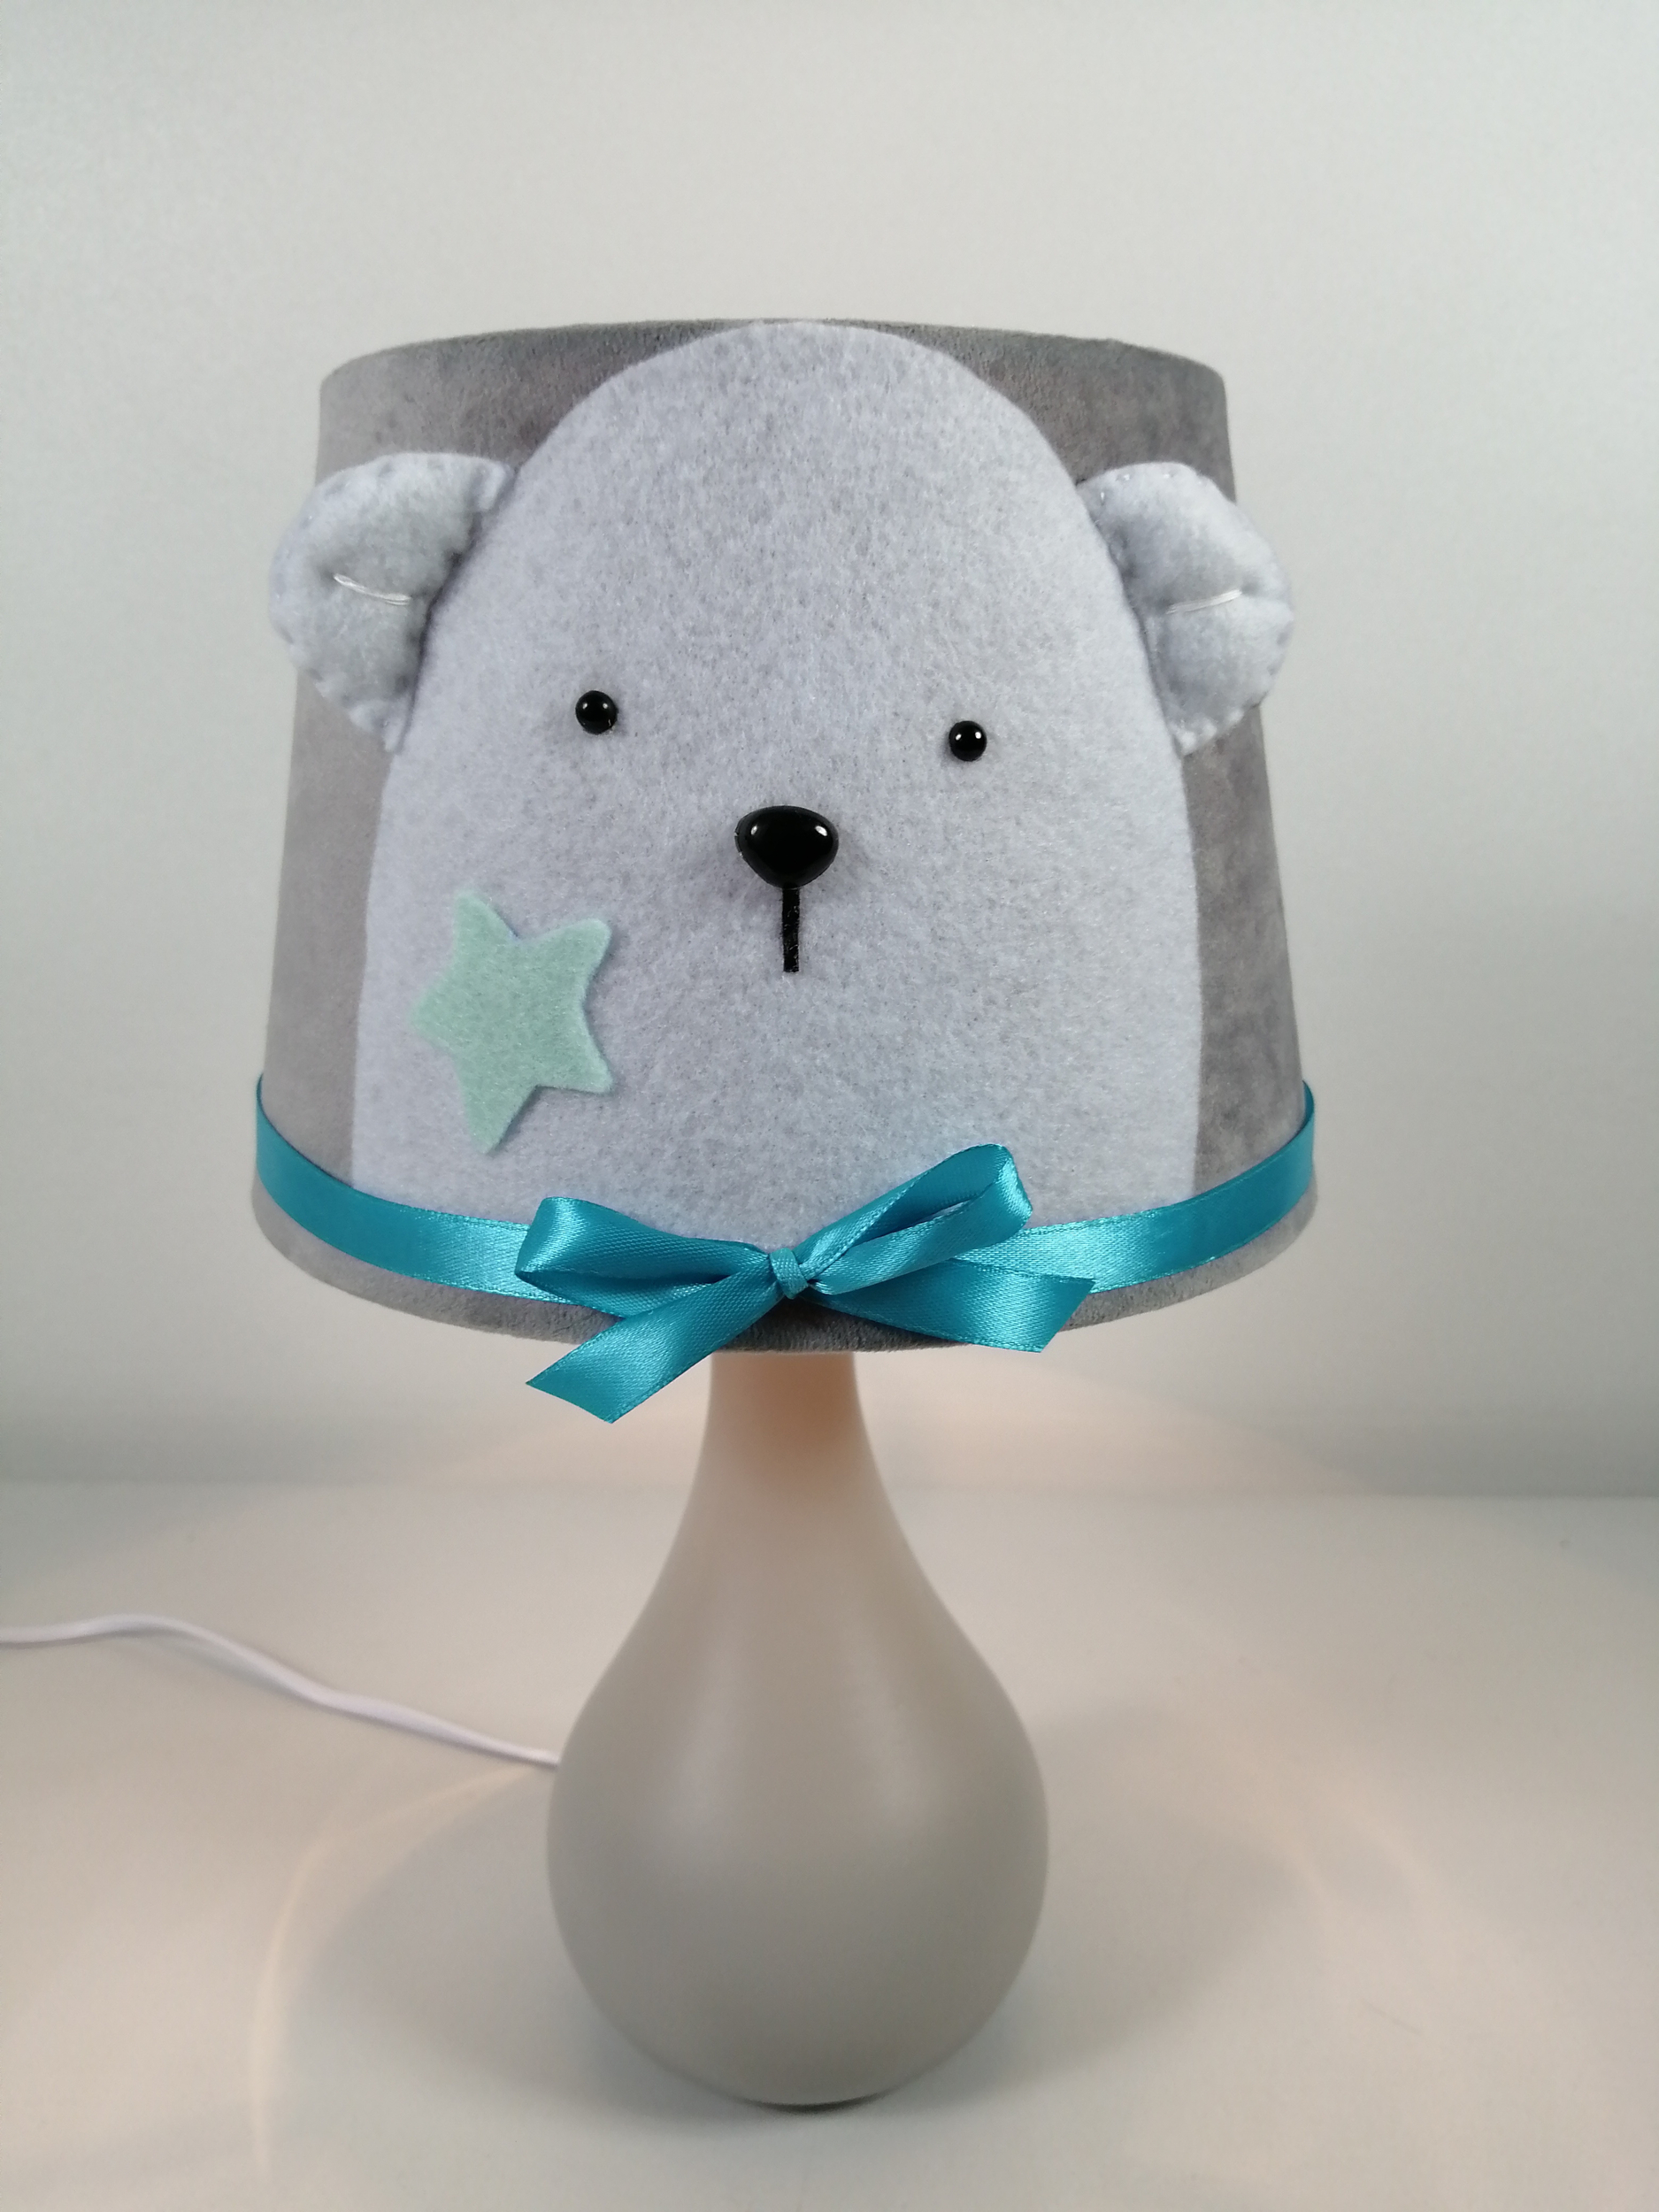 Lampe de chevet enfant bébé garn ours polaire bleu turquoise gris blanc